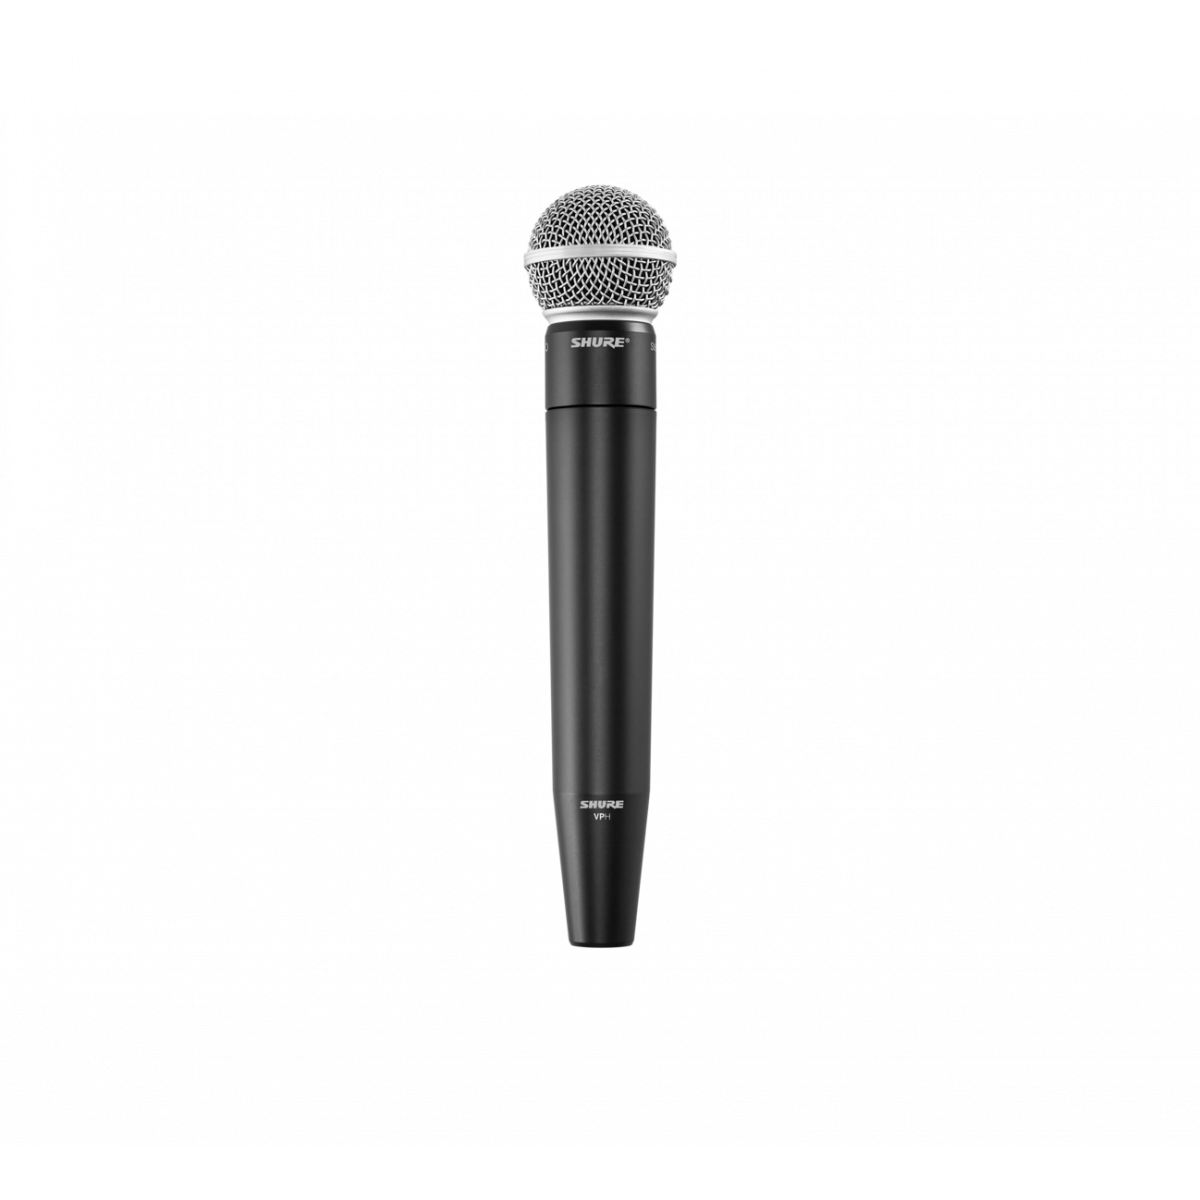 Chasis de micrófono largo para micrófonos XLR. Ideal entrevistas. Negro.